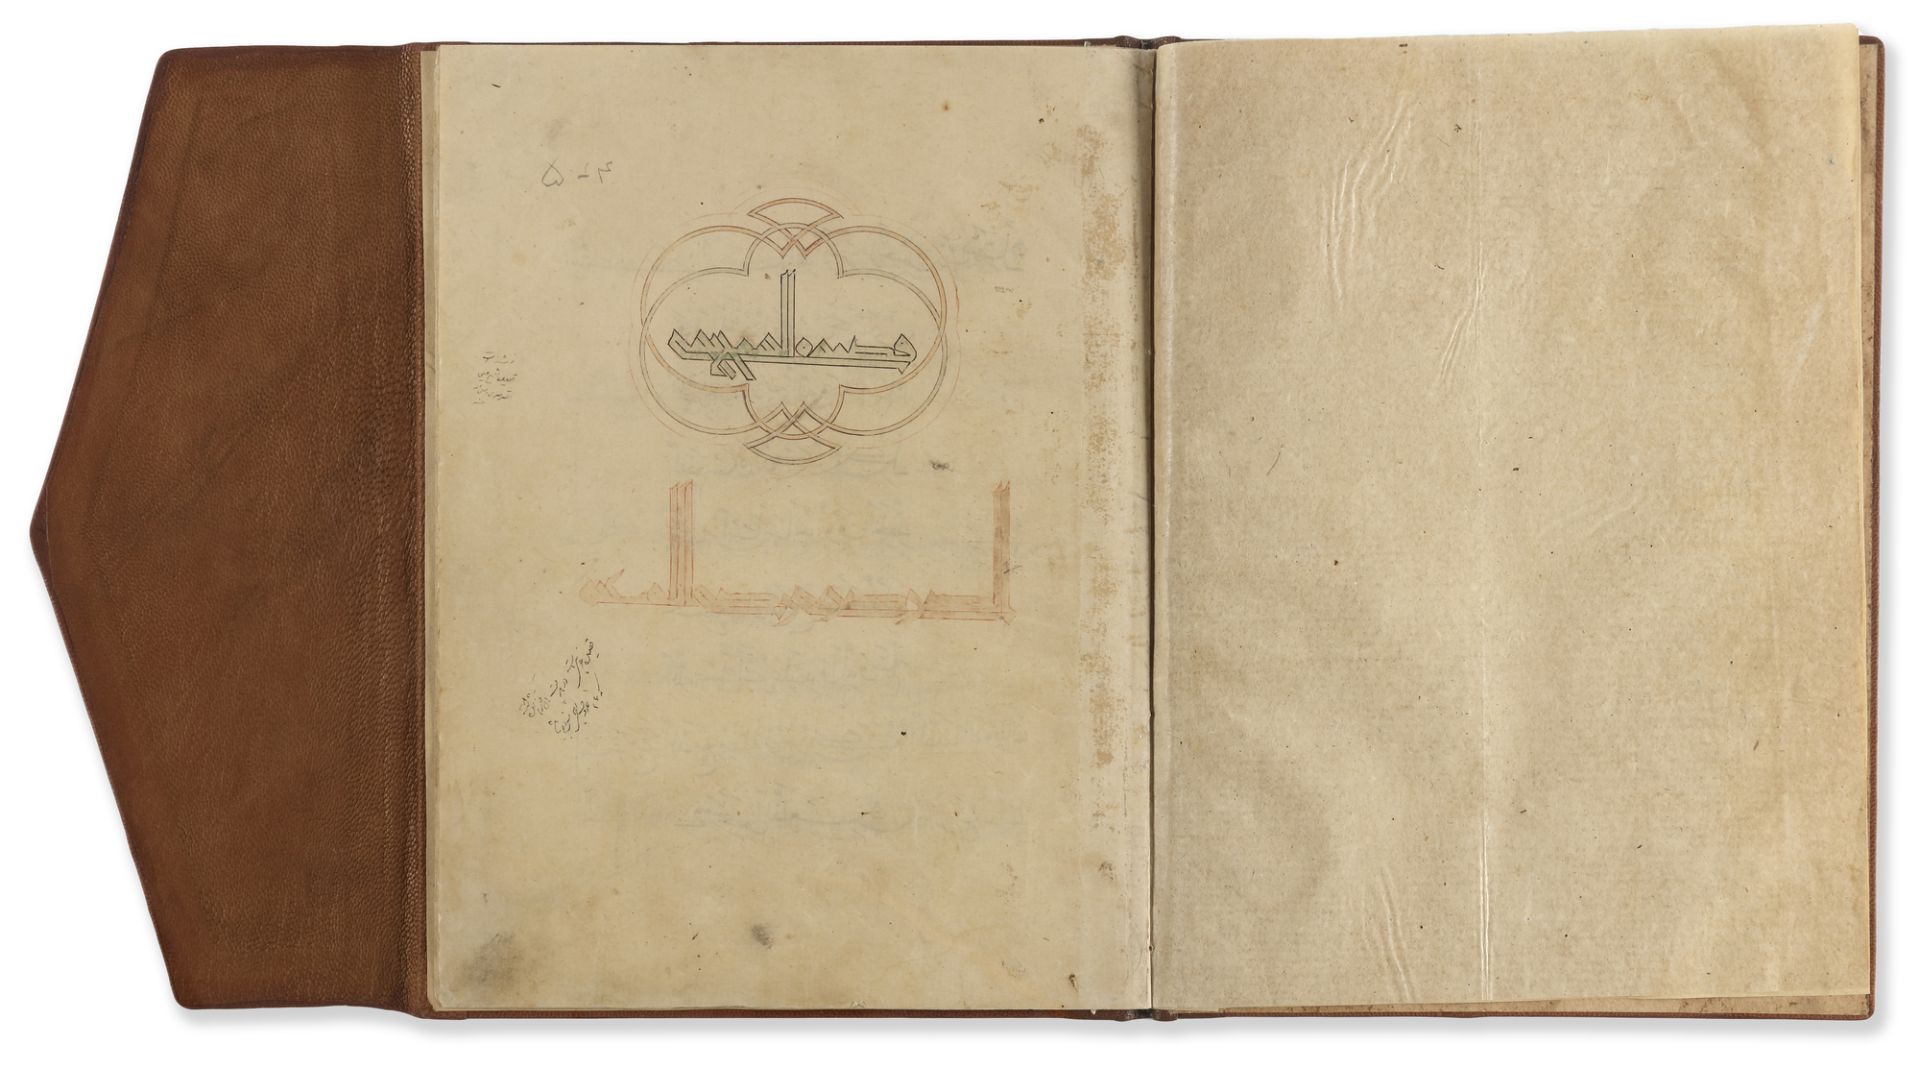 QASDIAT AL-SARIRIA, BY AHMED BIN AL-SAHRAWARDI, STUDENT OF THE FAMOUS YAQUT AL-MUSTASIMI, 14TH CENTU - Bild 4 aus 9